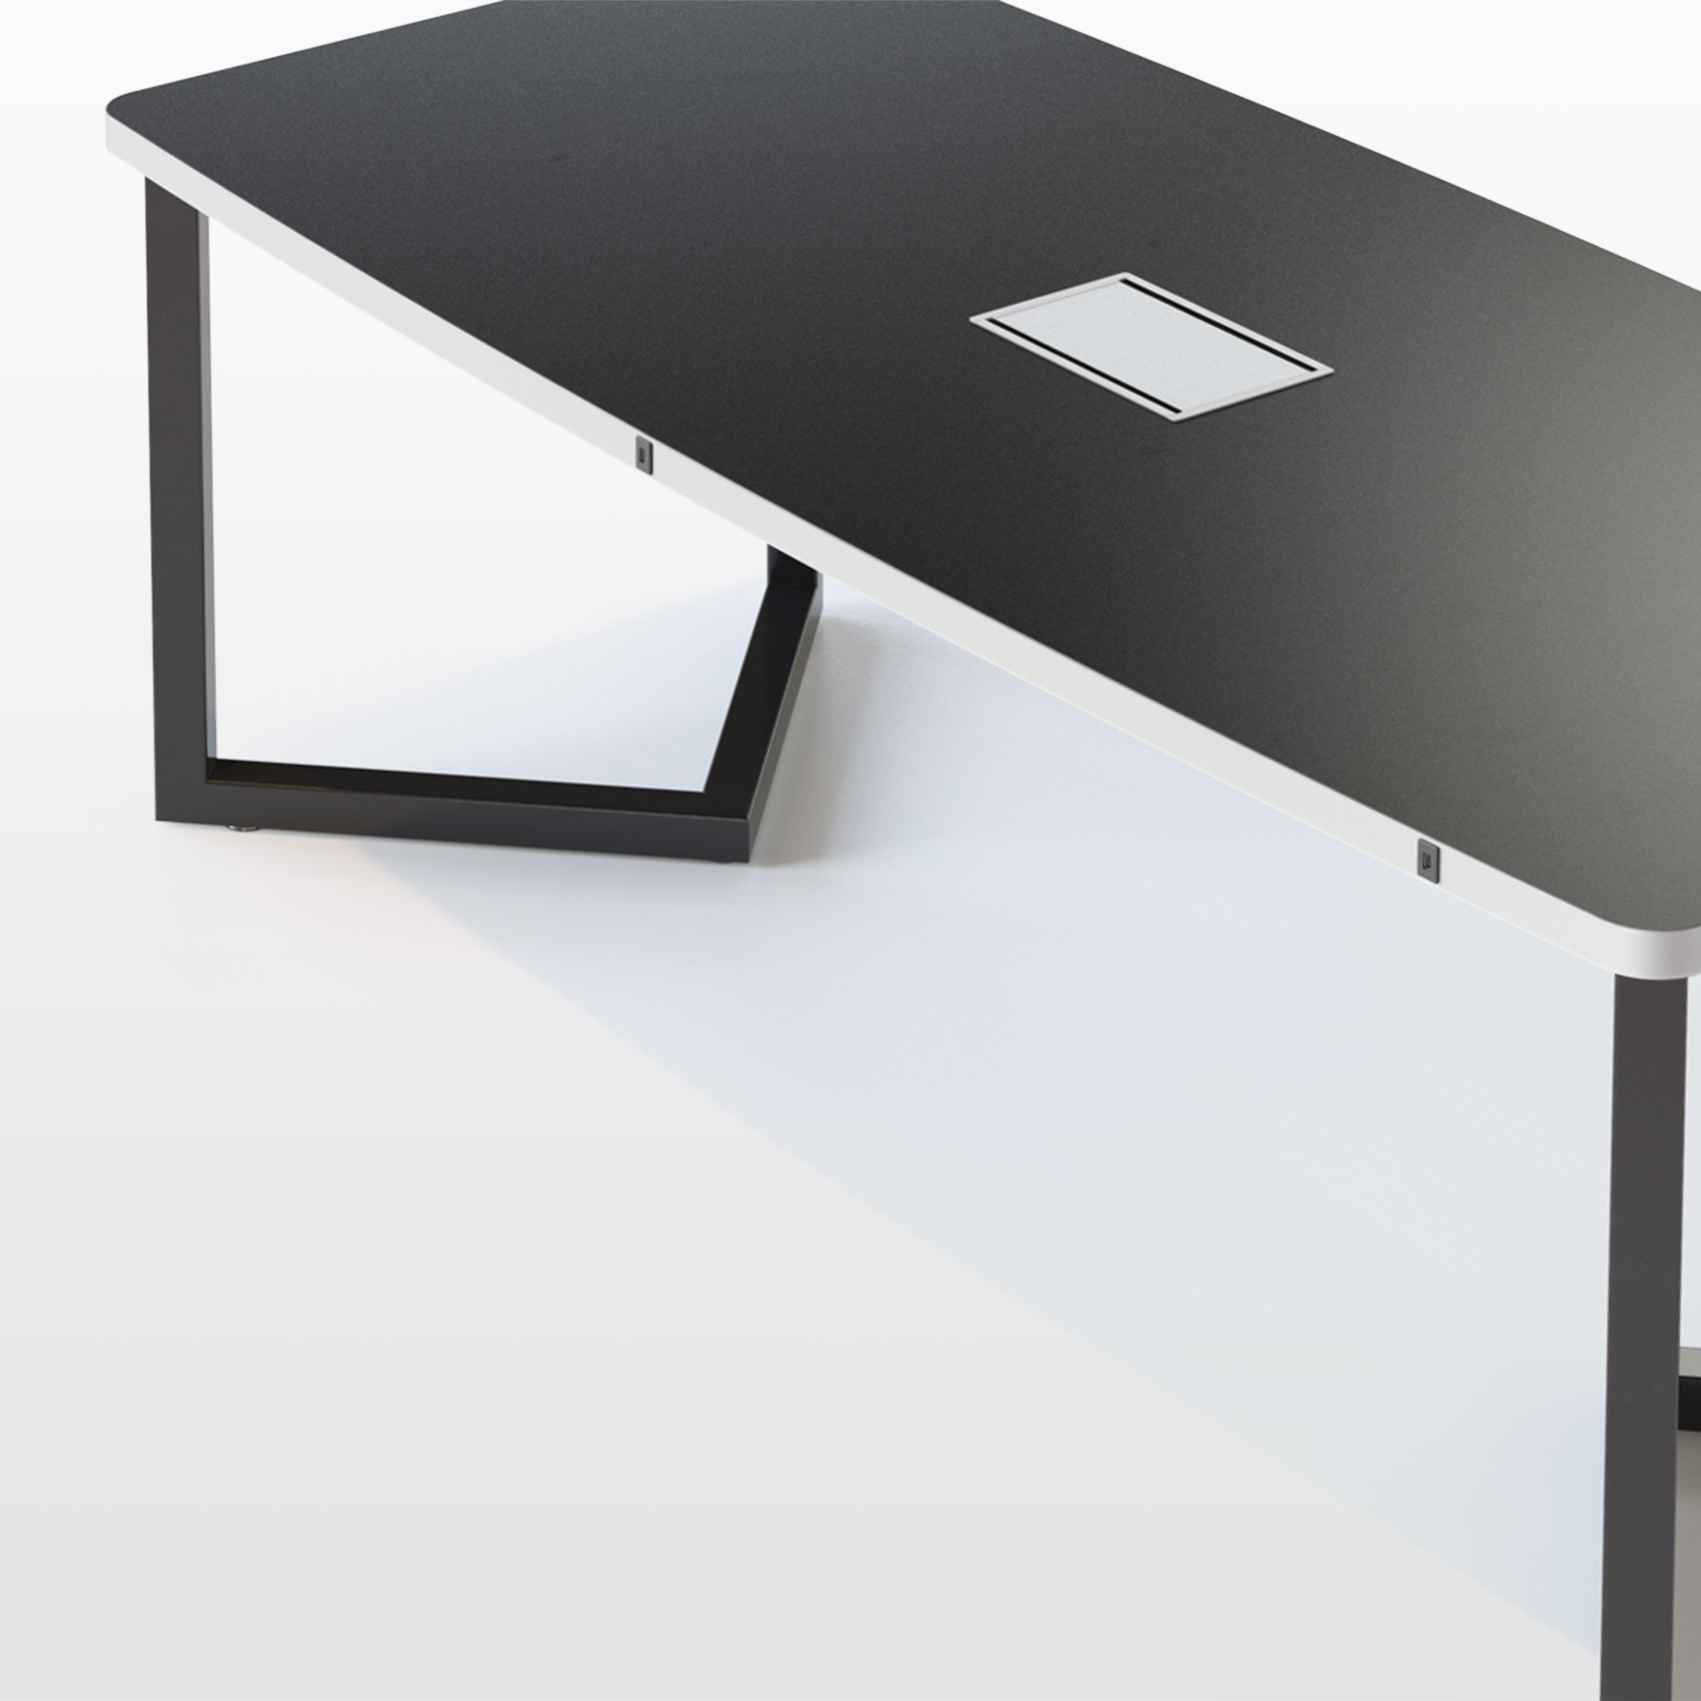 Переговорный стол прямоугольной формы